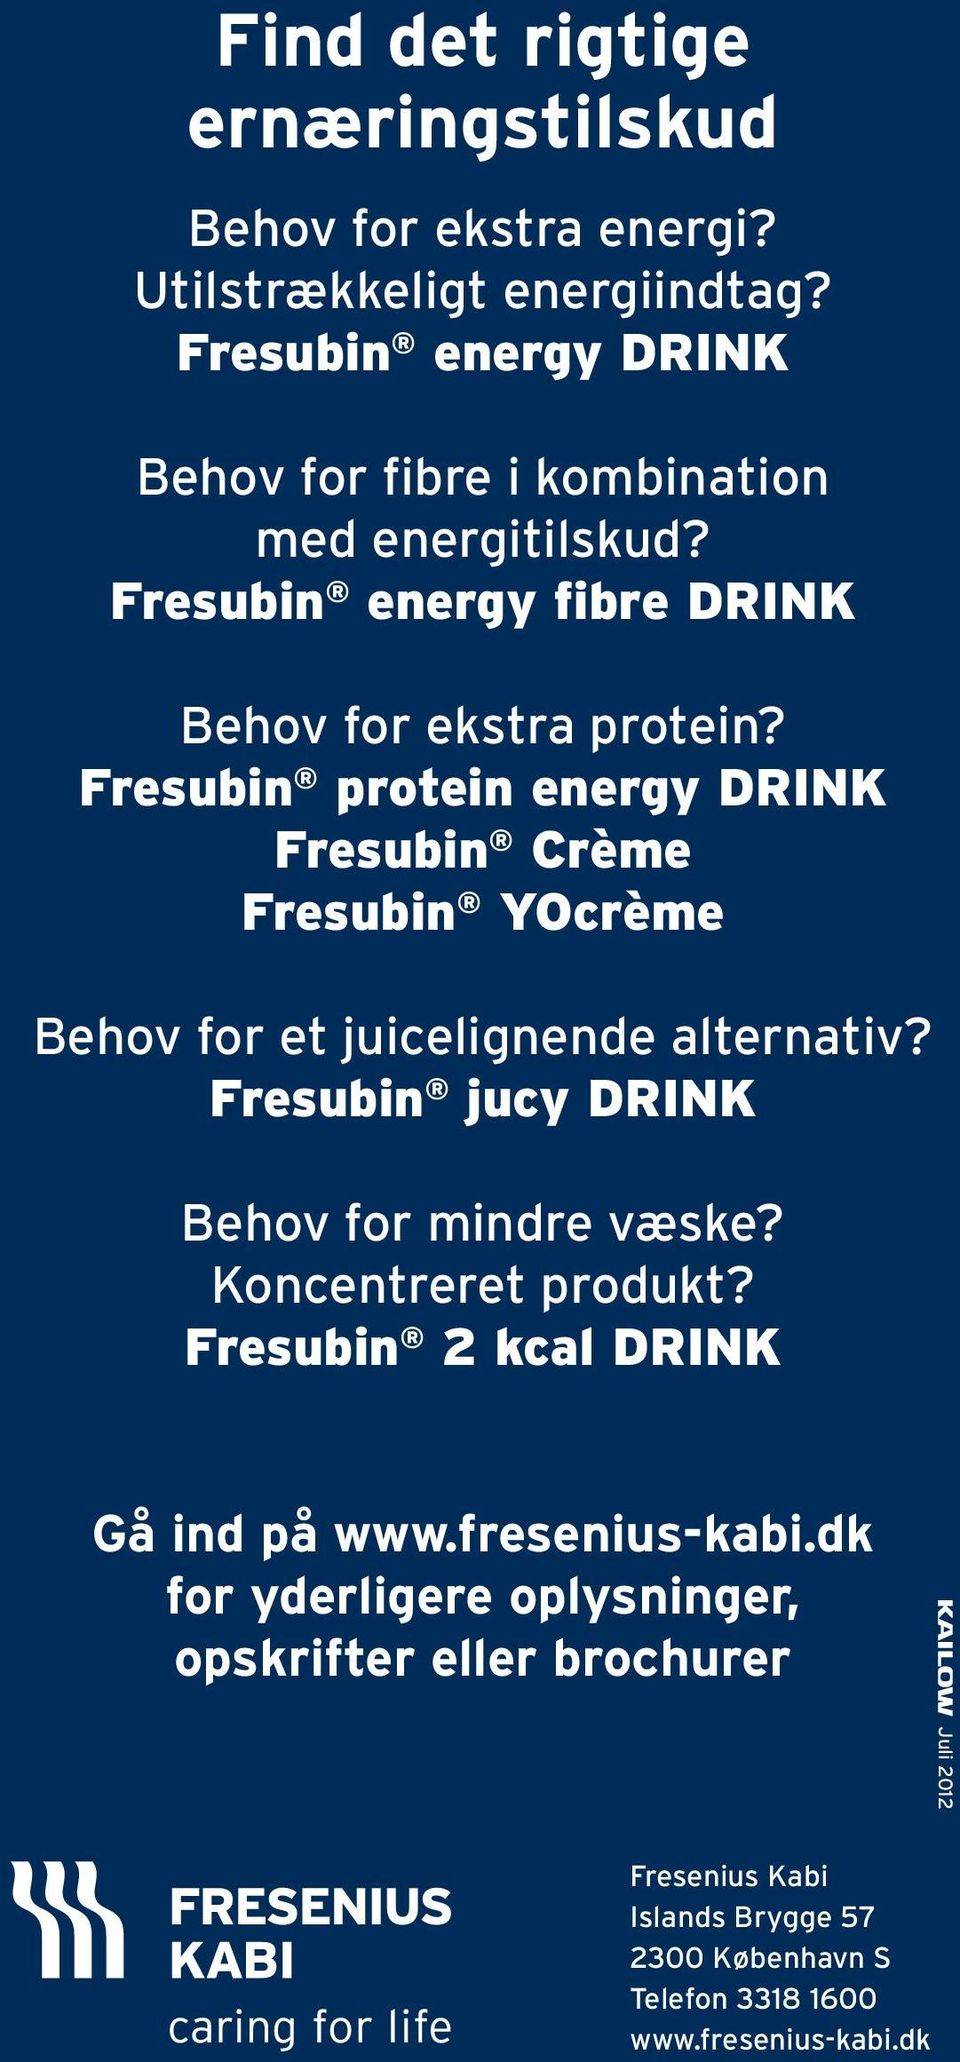 Fresubin protein energy DRINK Fresubin Crème Fresubin YOcrème Behov for et juicelignende alternativ? Fresubin jucy DRINK Behov for mindre væske?